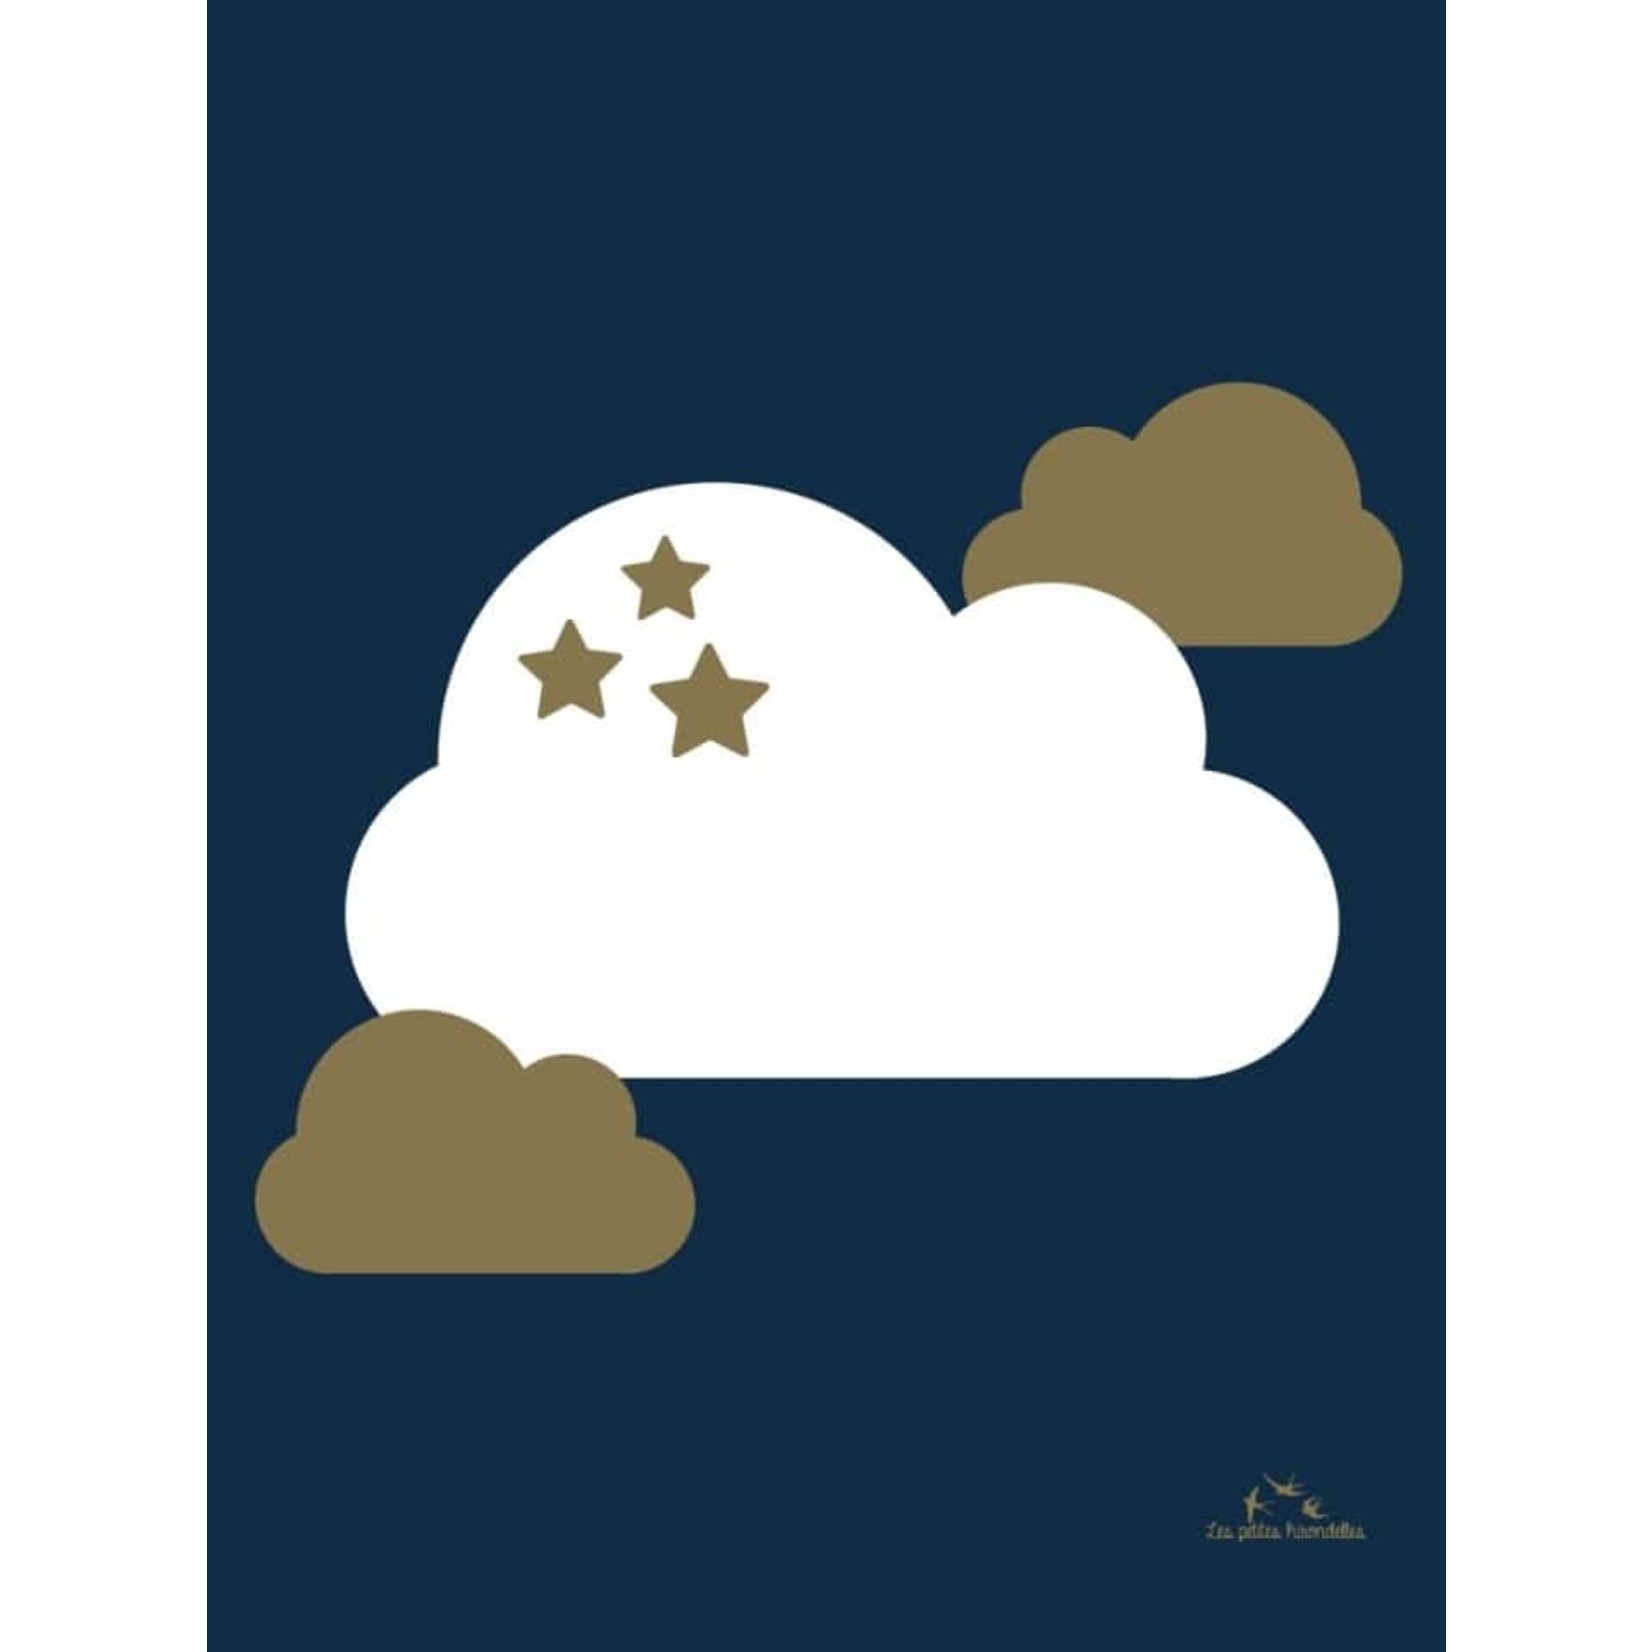 Les petites hirondelles Les petites hirondelles – affiche A4 – nuage étoilés fond bleu